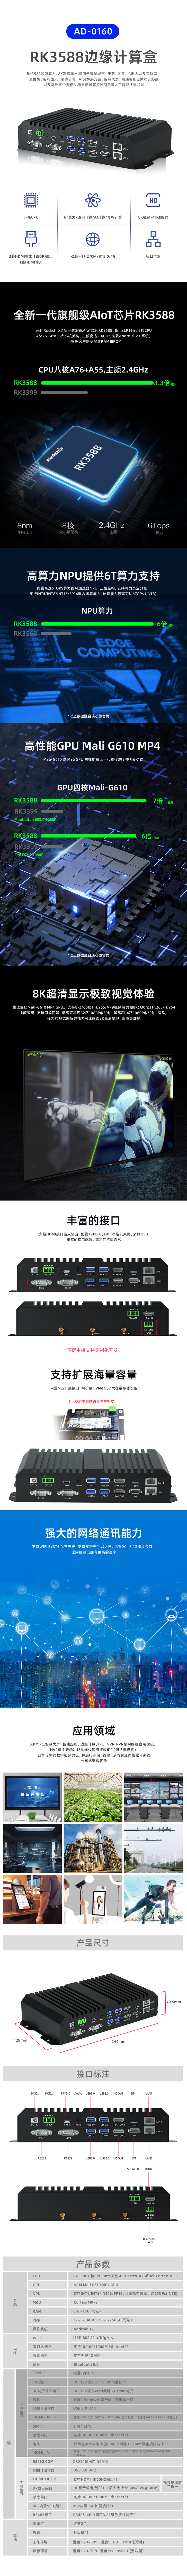 中文 AD-0160 3588边缘计算设备推广页20221020.jpg